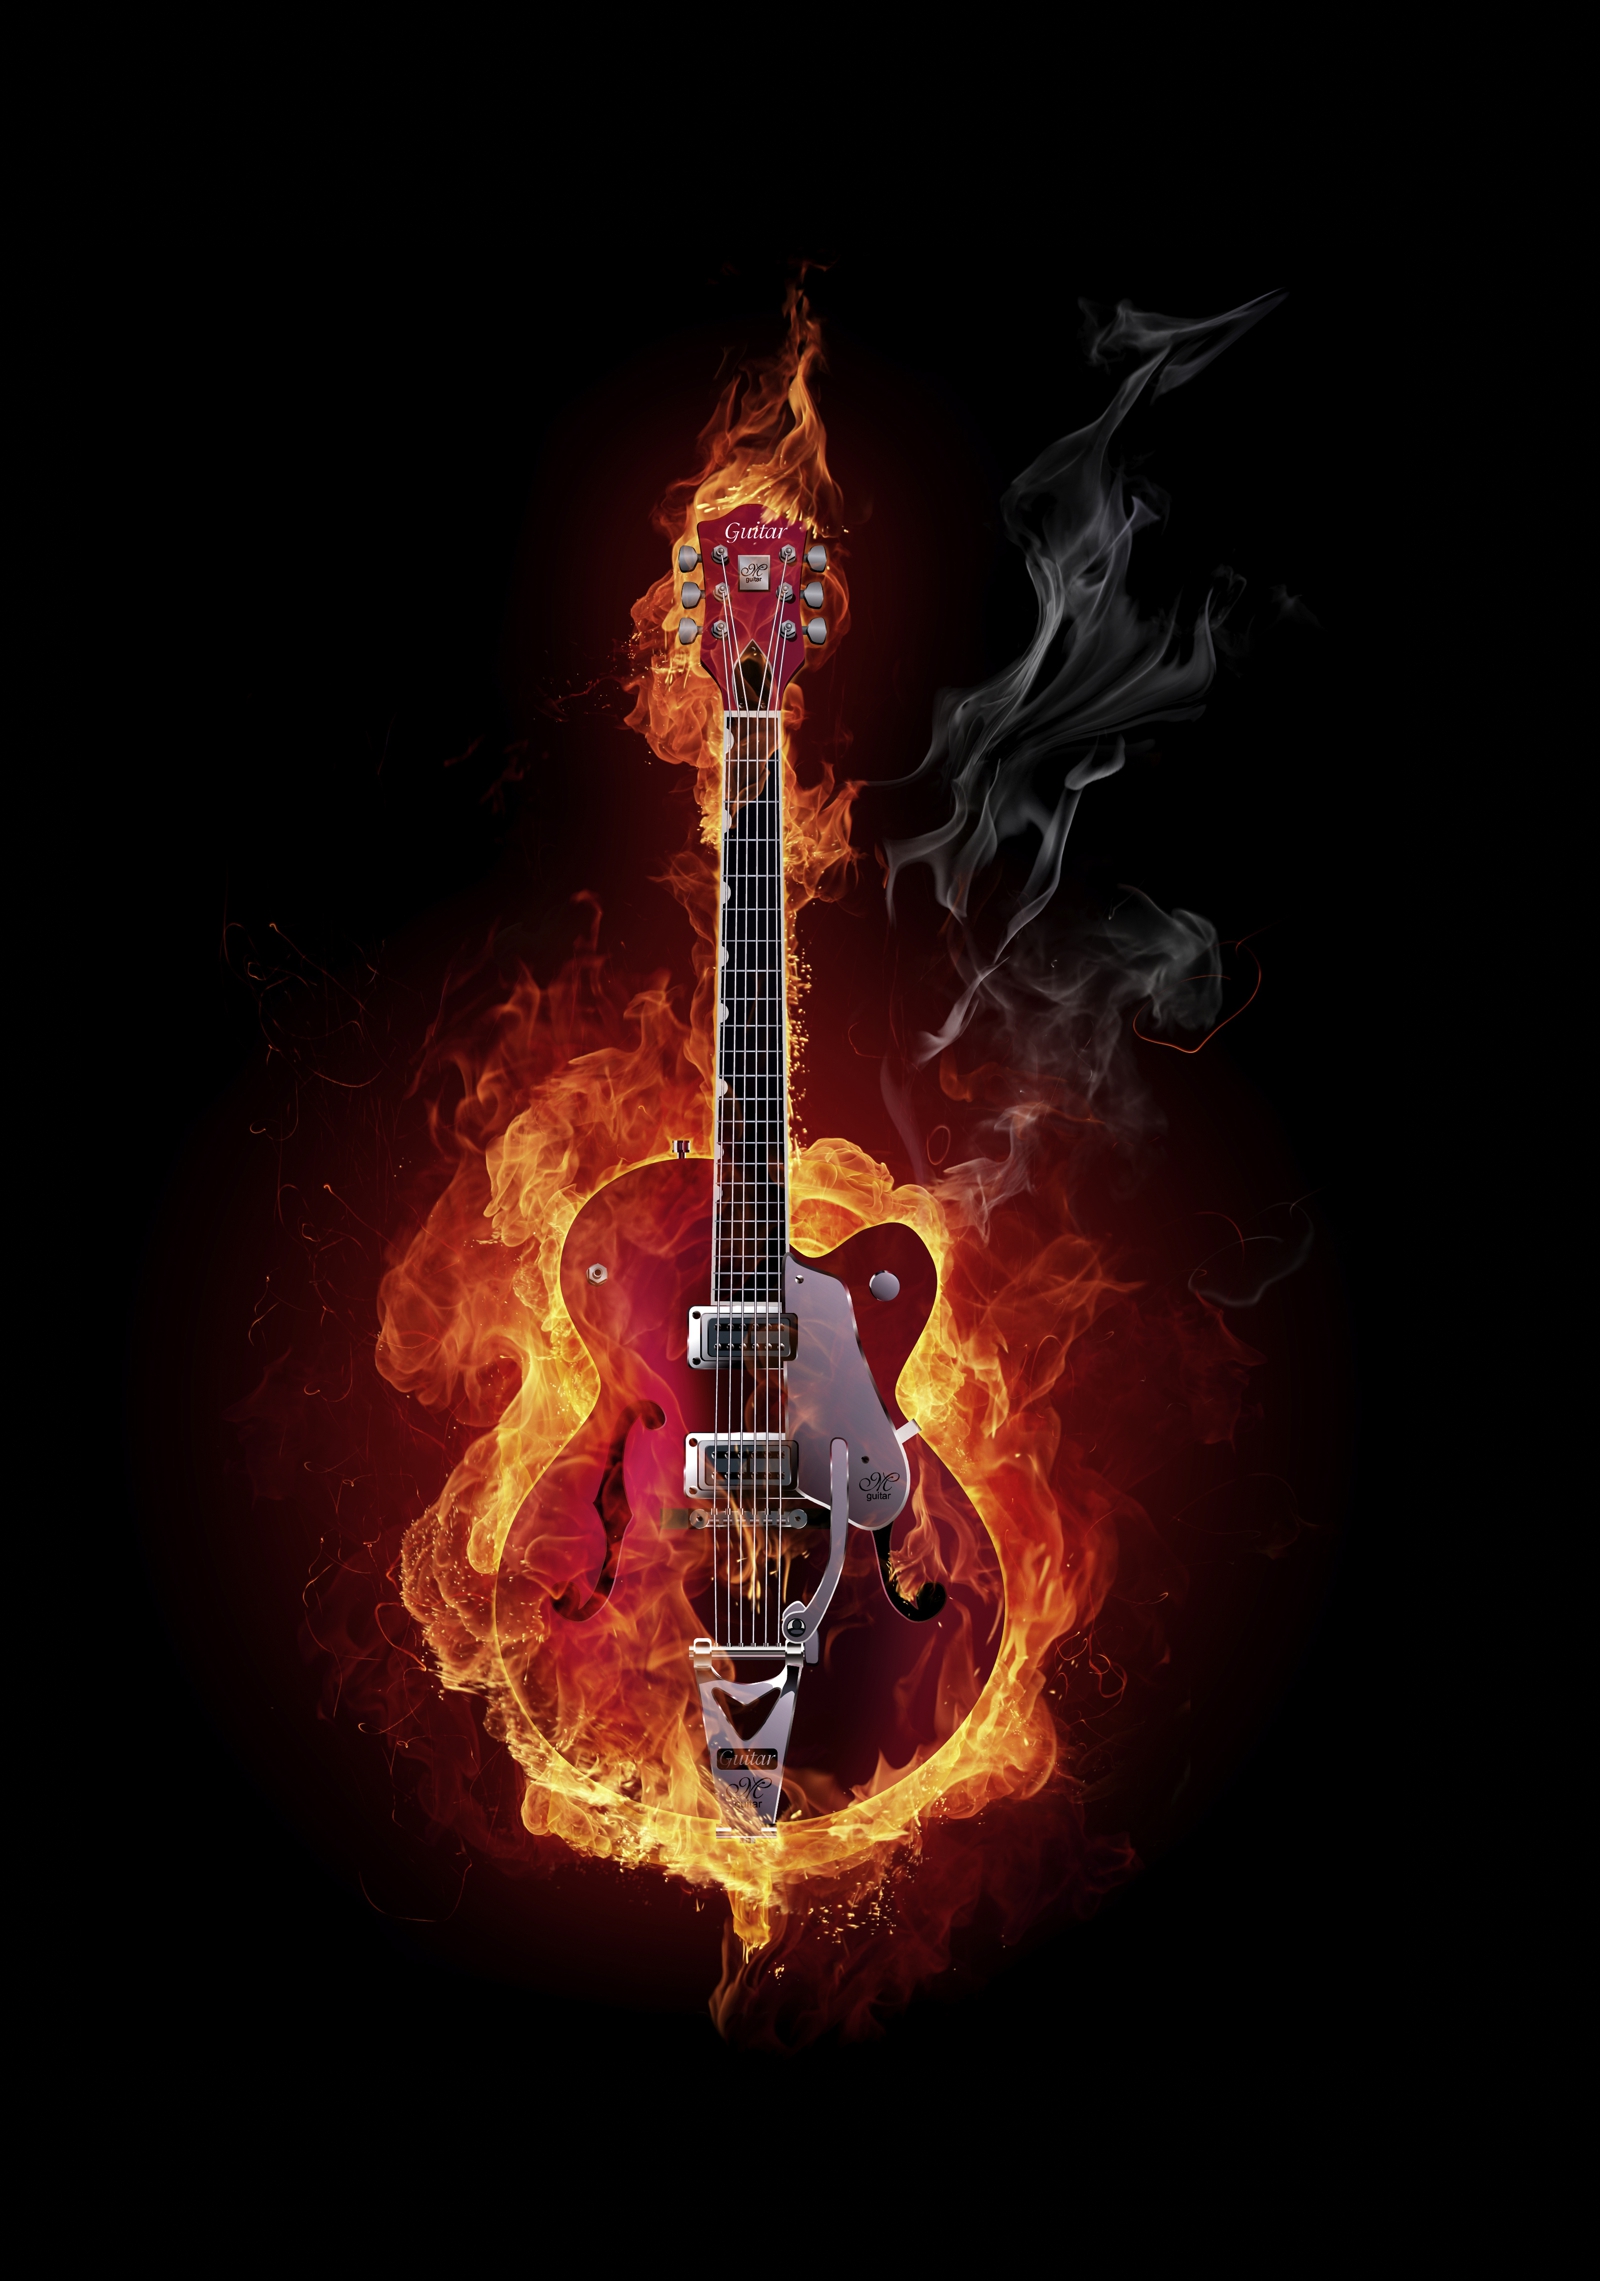 Leinwandbild Burn Gitarre in Flammen